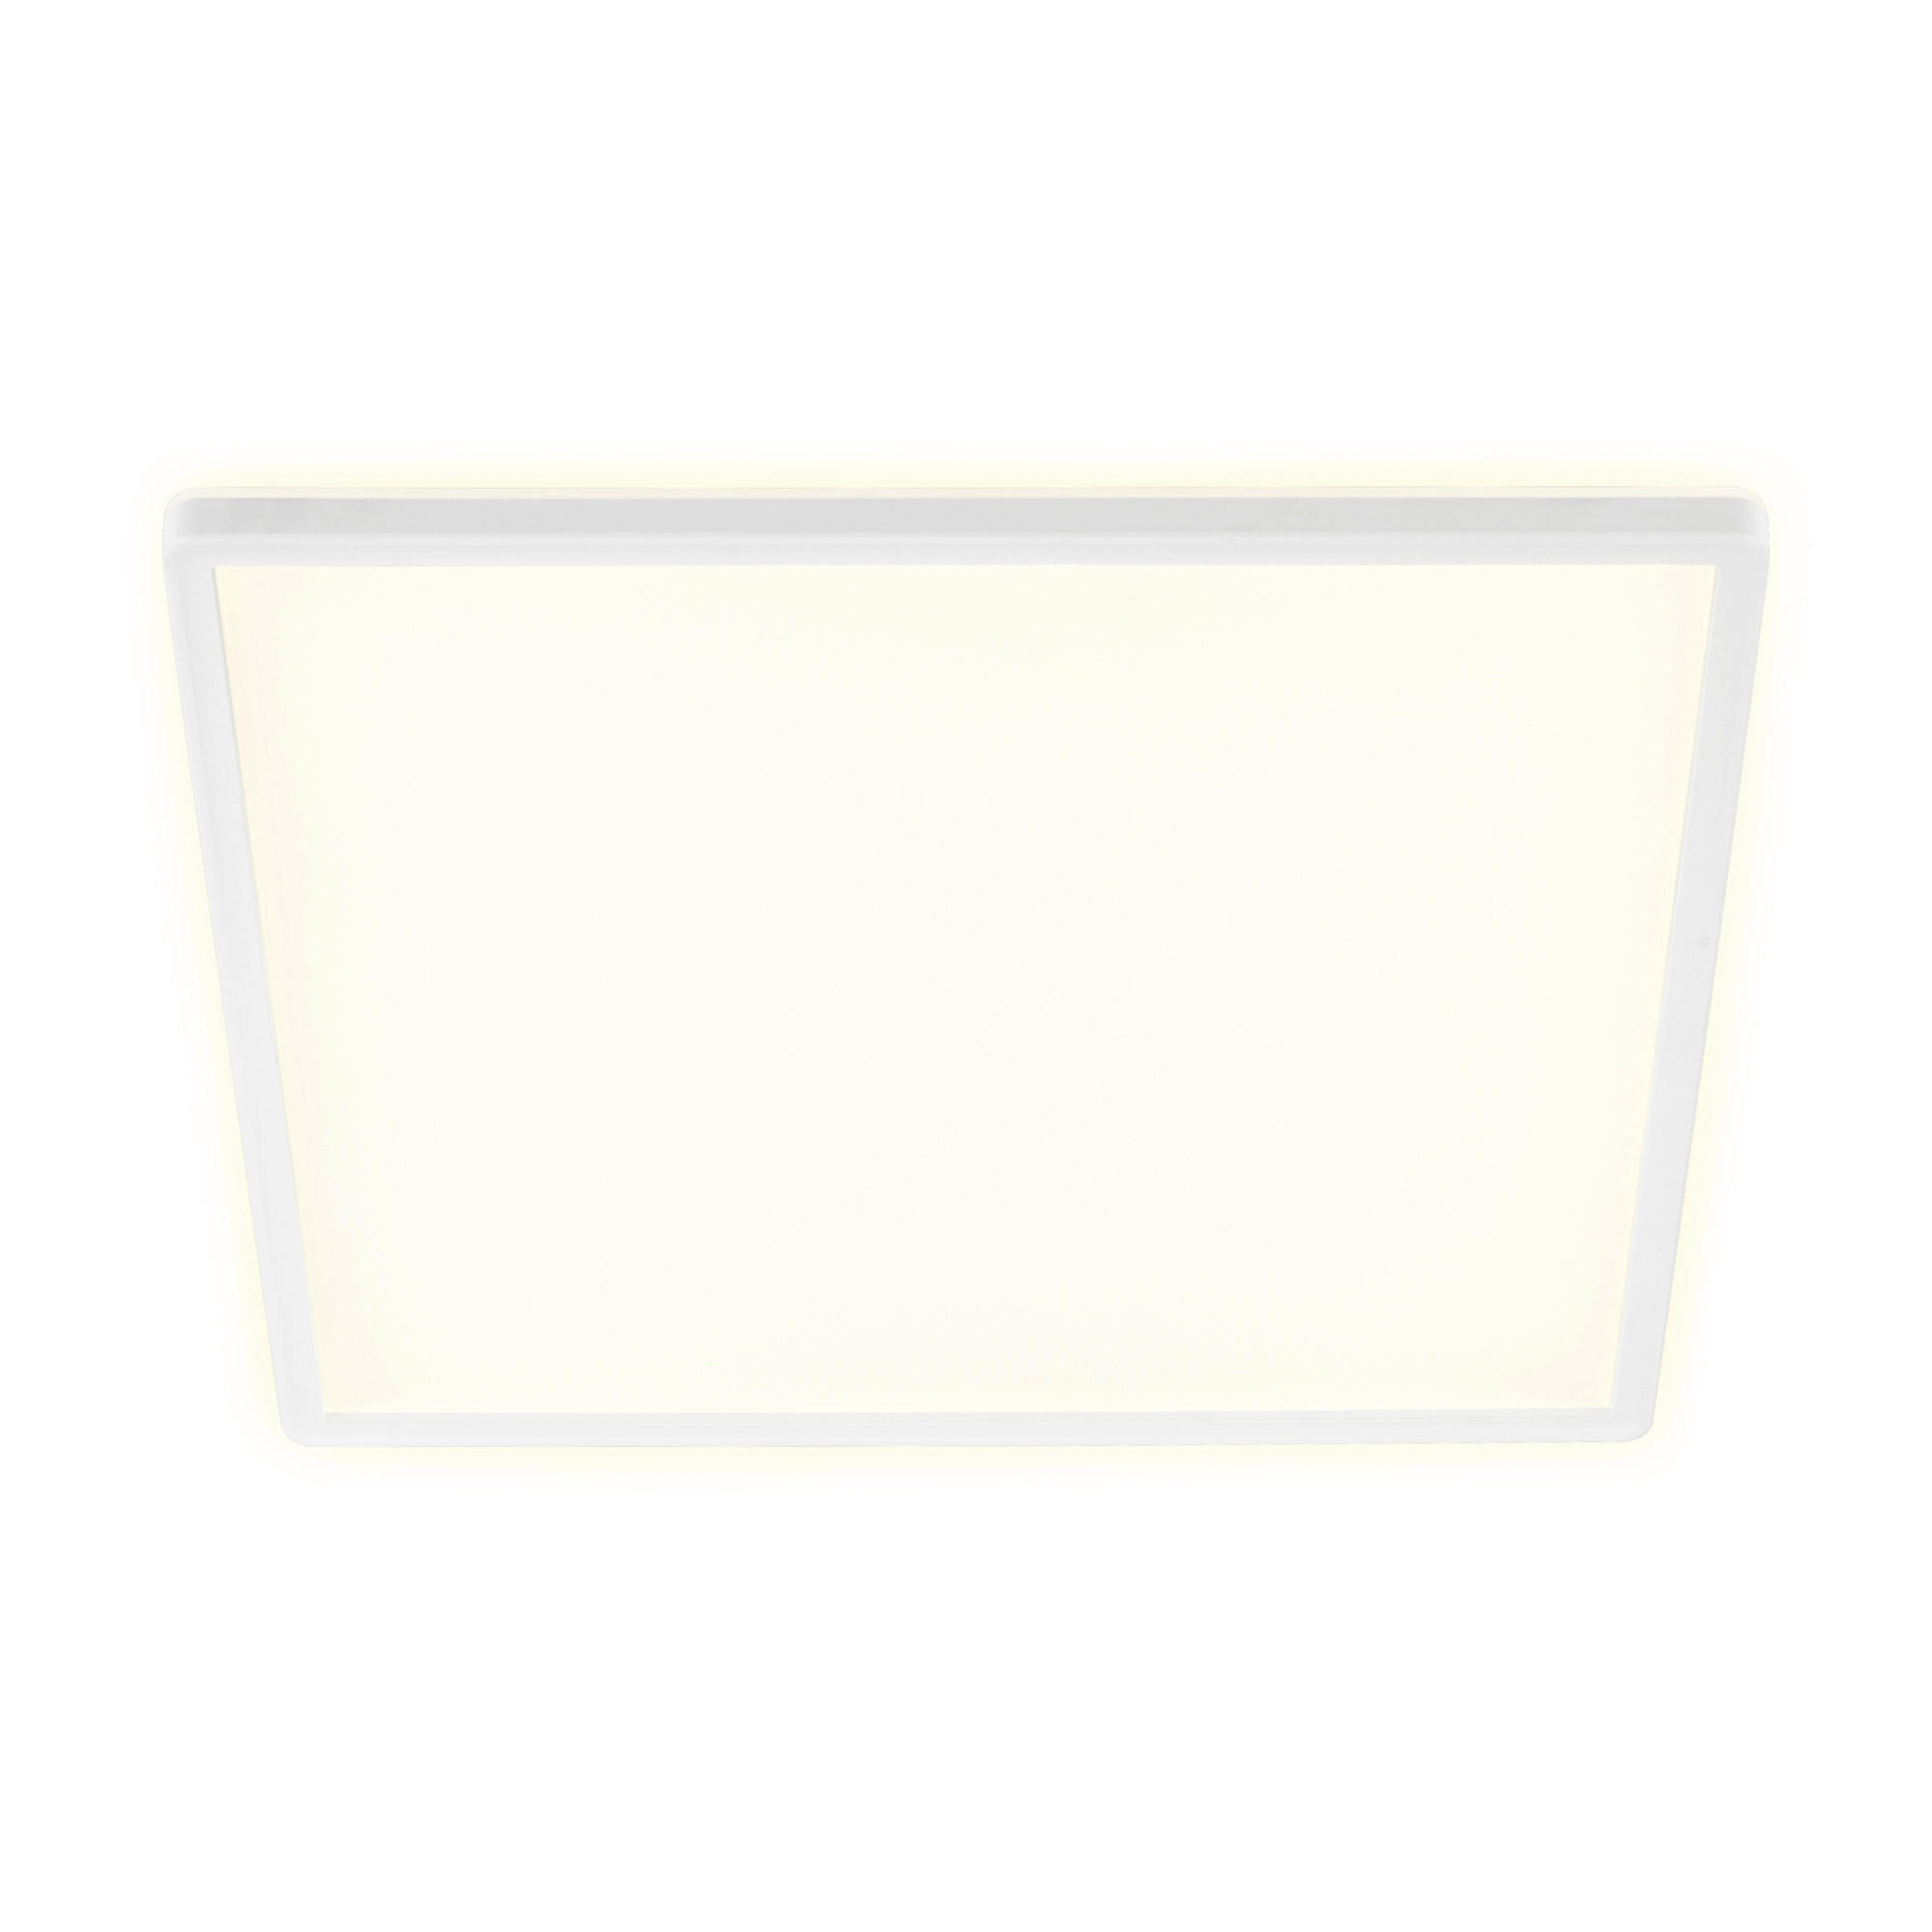 LED-PANEEL Slim  - Weiß, Basics, Kunststoff (42/42/2,9cm)